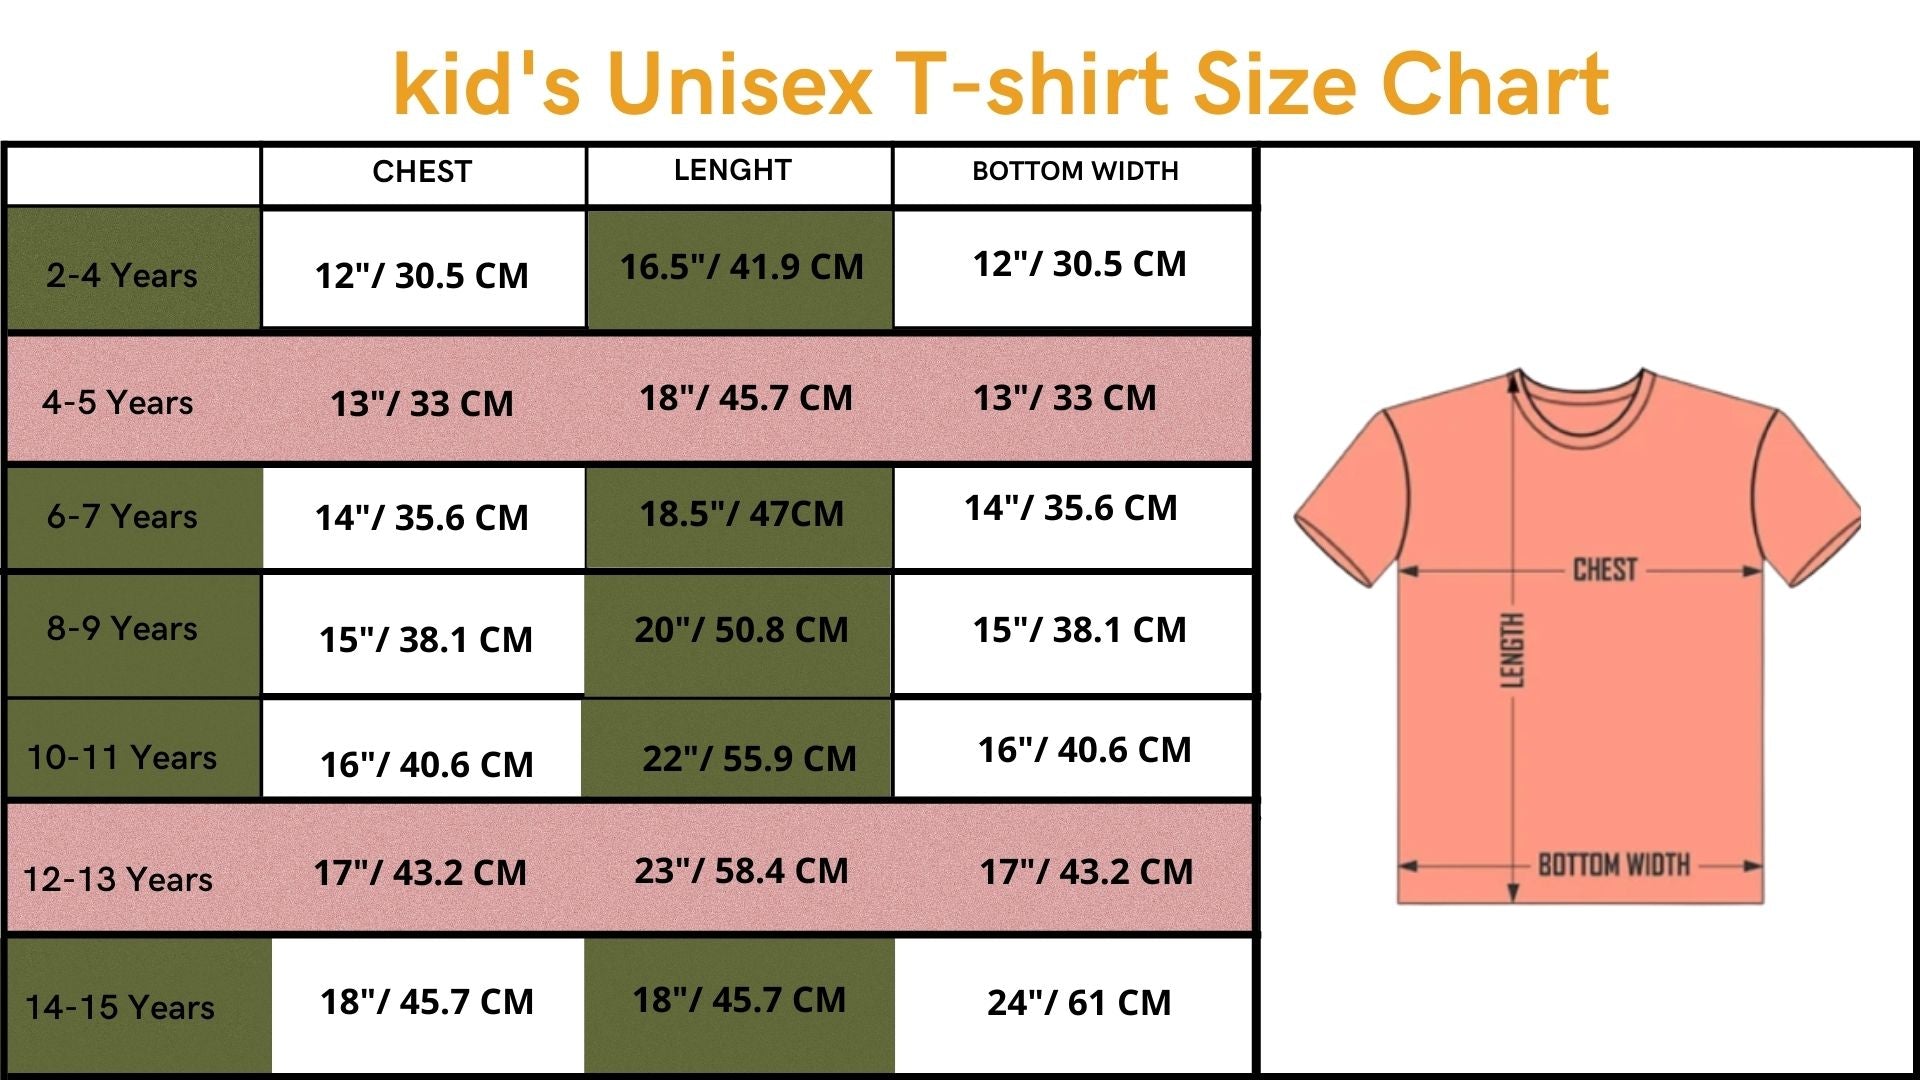 Happy Escaped - Children's Crew Neck T-Shirts - 2,7 Years Children - Casual Wear Kids T-Shirt - Wear Sierra